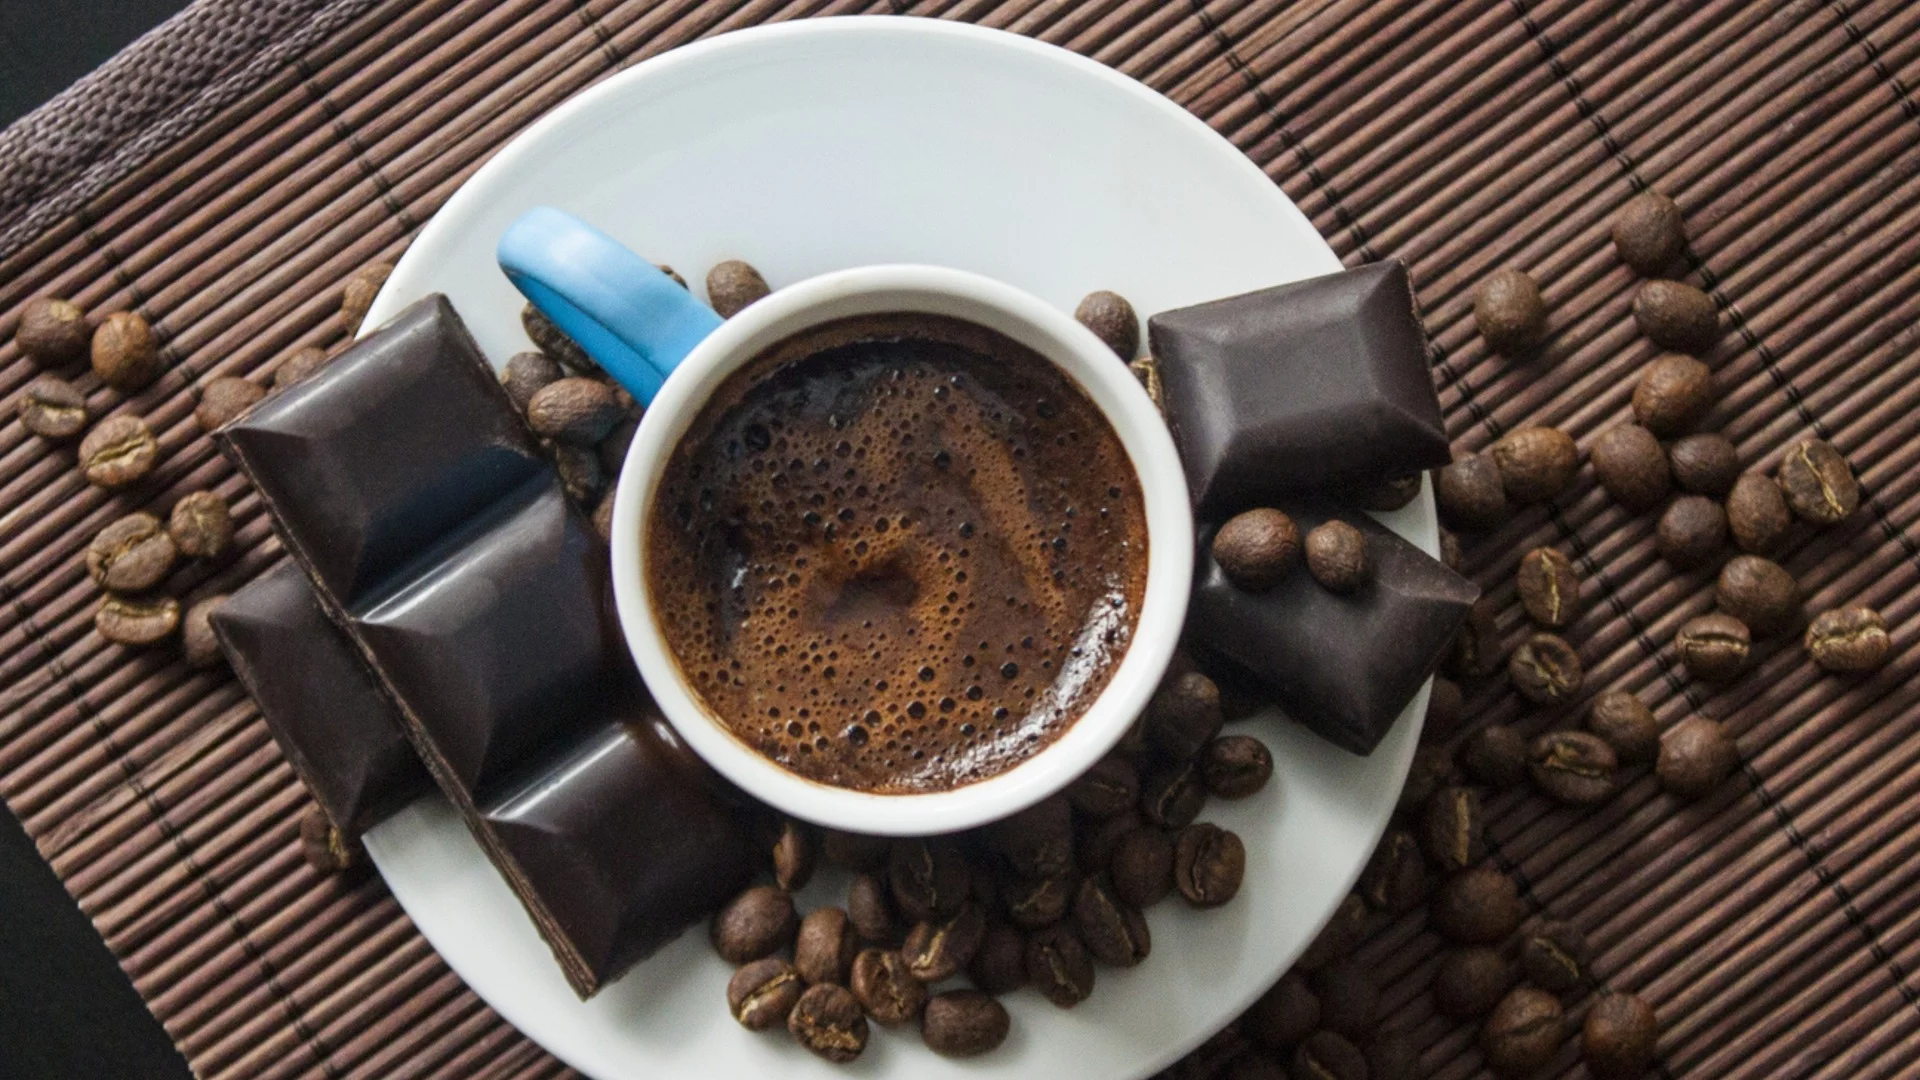 Miten kahvi vaikuttaa korkeaan kolesteroliin?